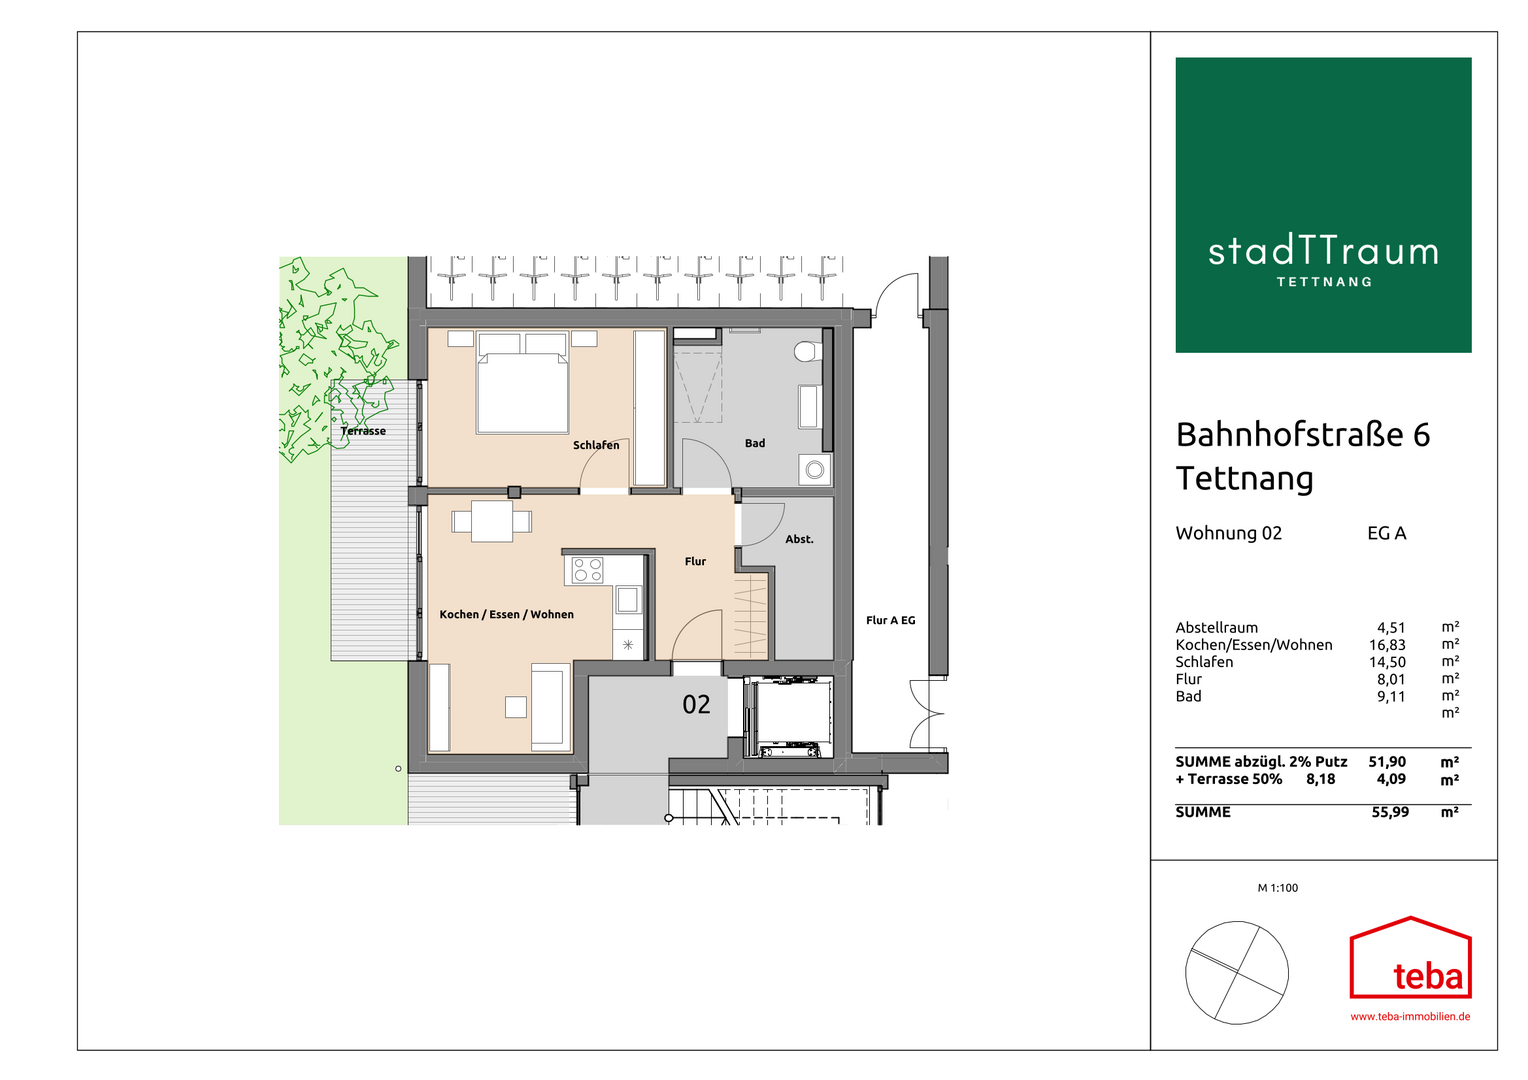 Wohnung EG A02 - Erdgeschosswohnung in 88069 Tettnang mit 56m² kaufen